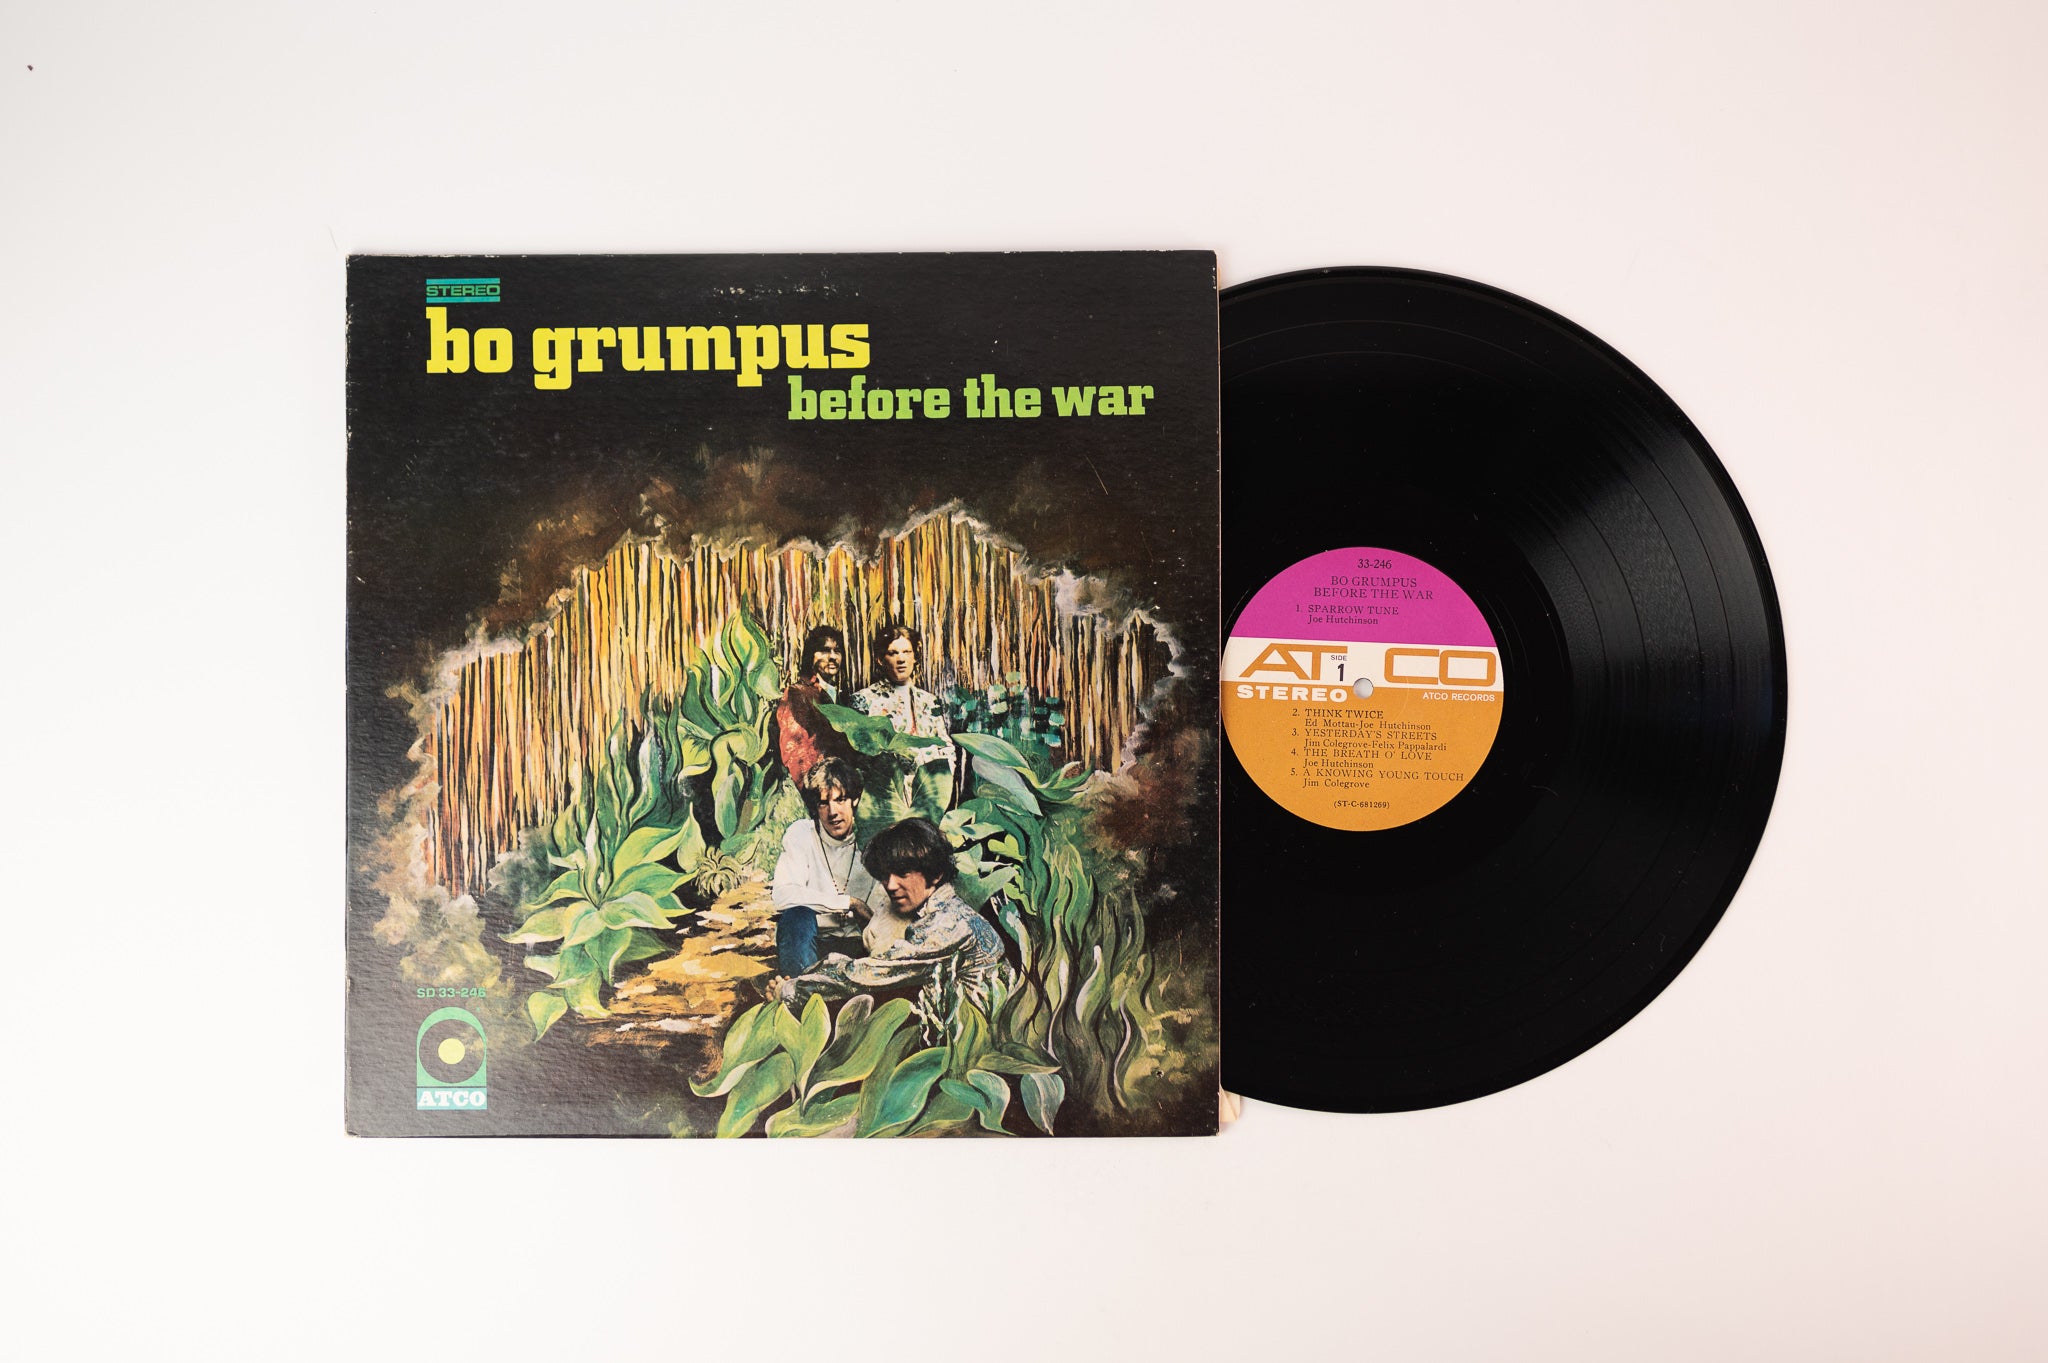 Bo Grumpus - Before The War on Atco